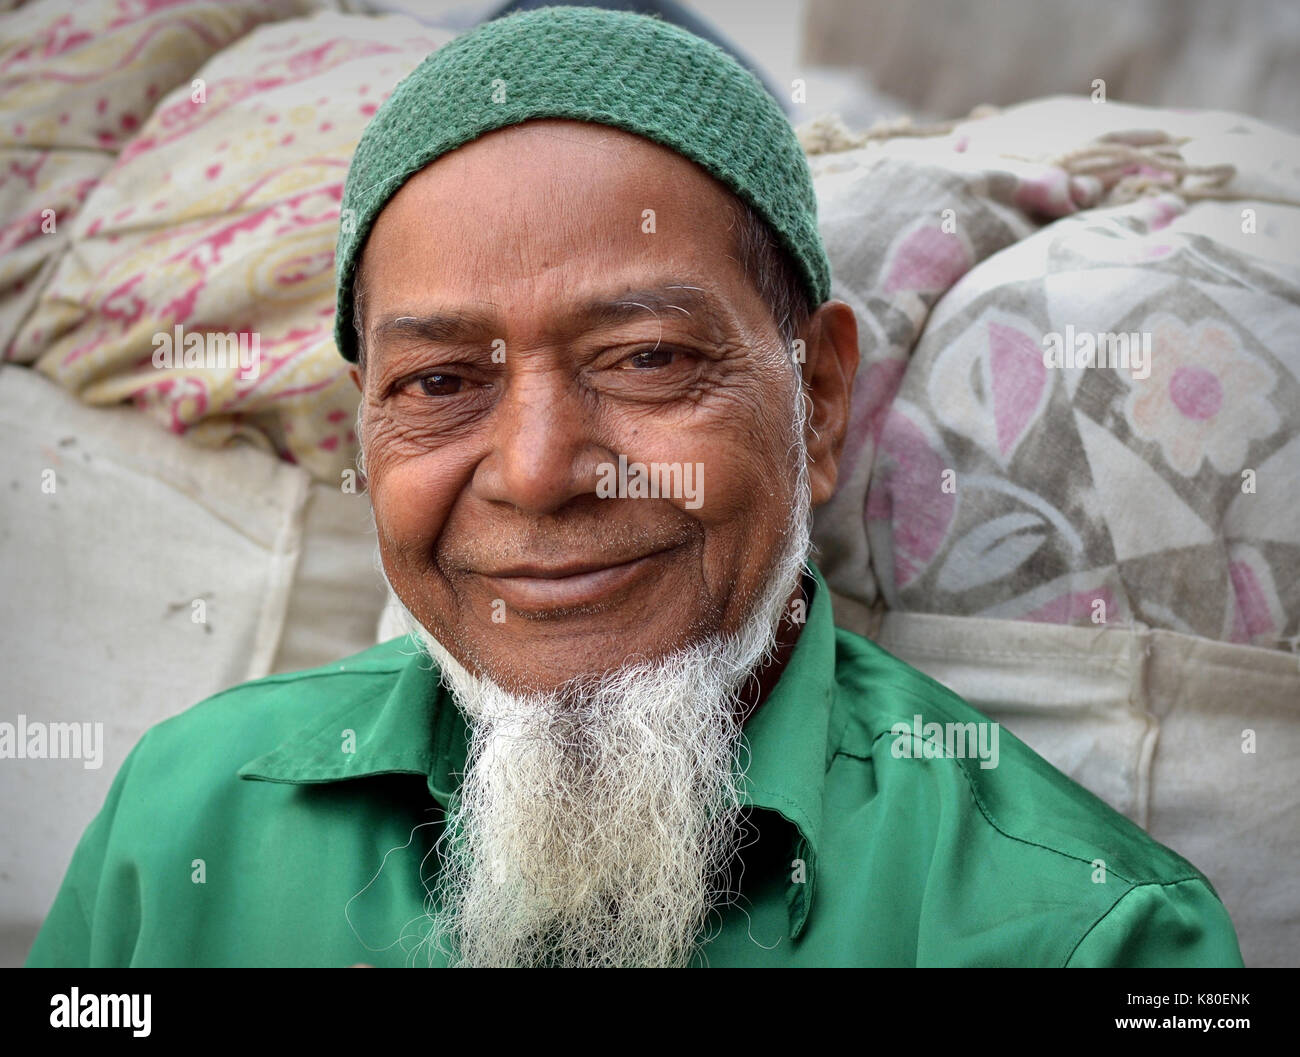 L'uomo musulmano indiano anziano con la barba bianca del mento musulmano indossa una camicia verde e un cappuccio di preghiera verde musulmano lavorato a maglia (taqiyah) e sorride per la macchina fotografica. Foto Stock